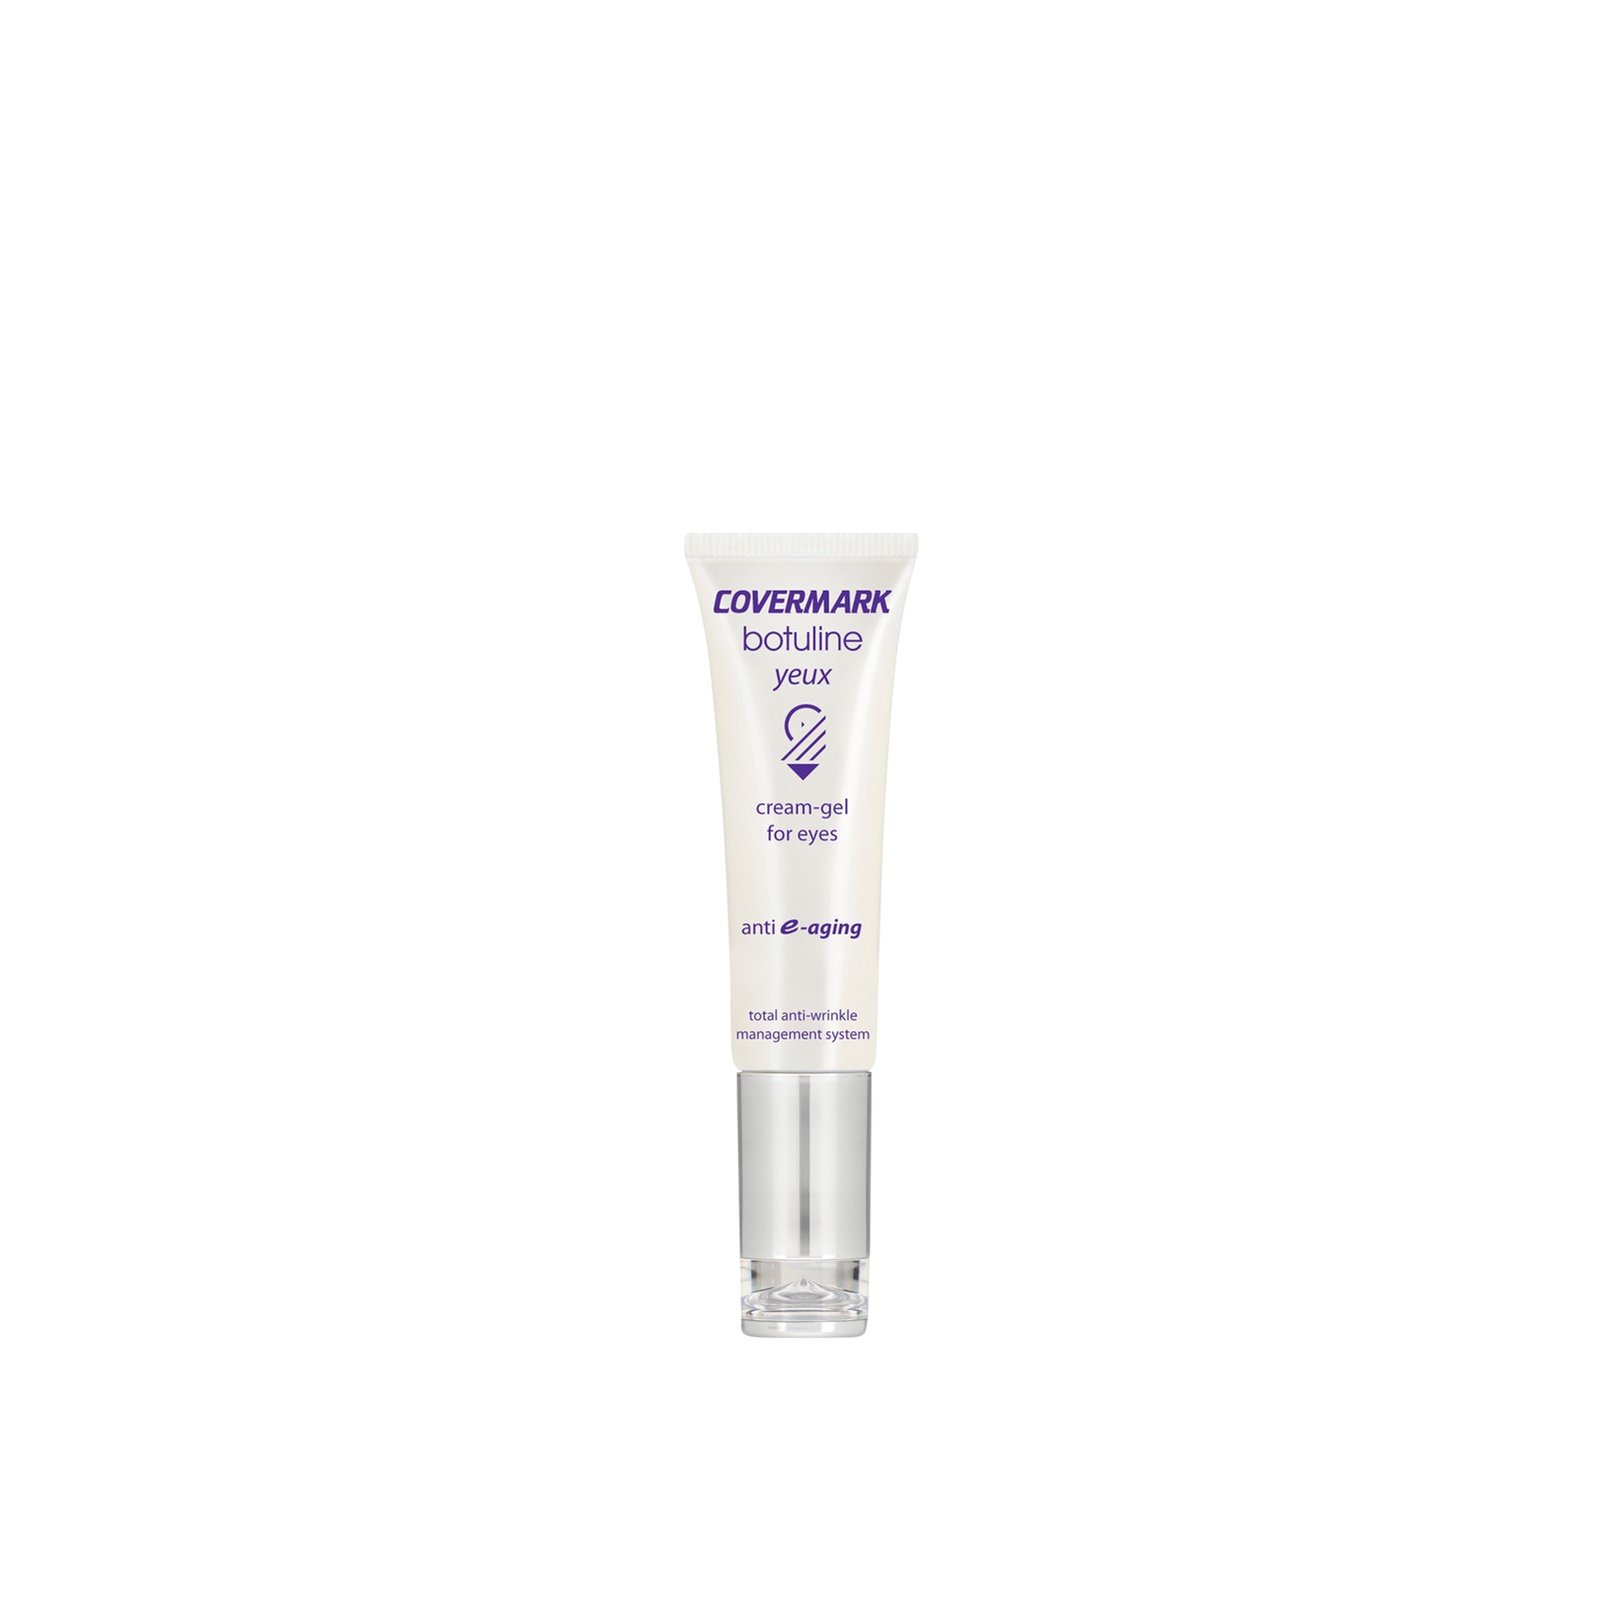 Covermark Botuline Cream-Gel For Eyes Tube 20ml